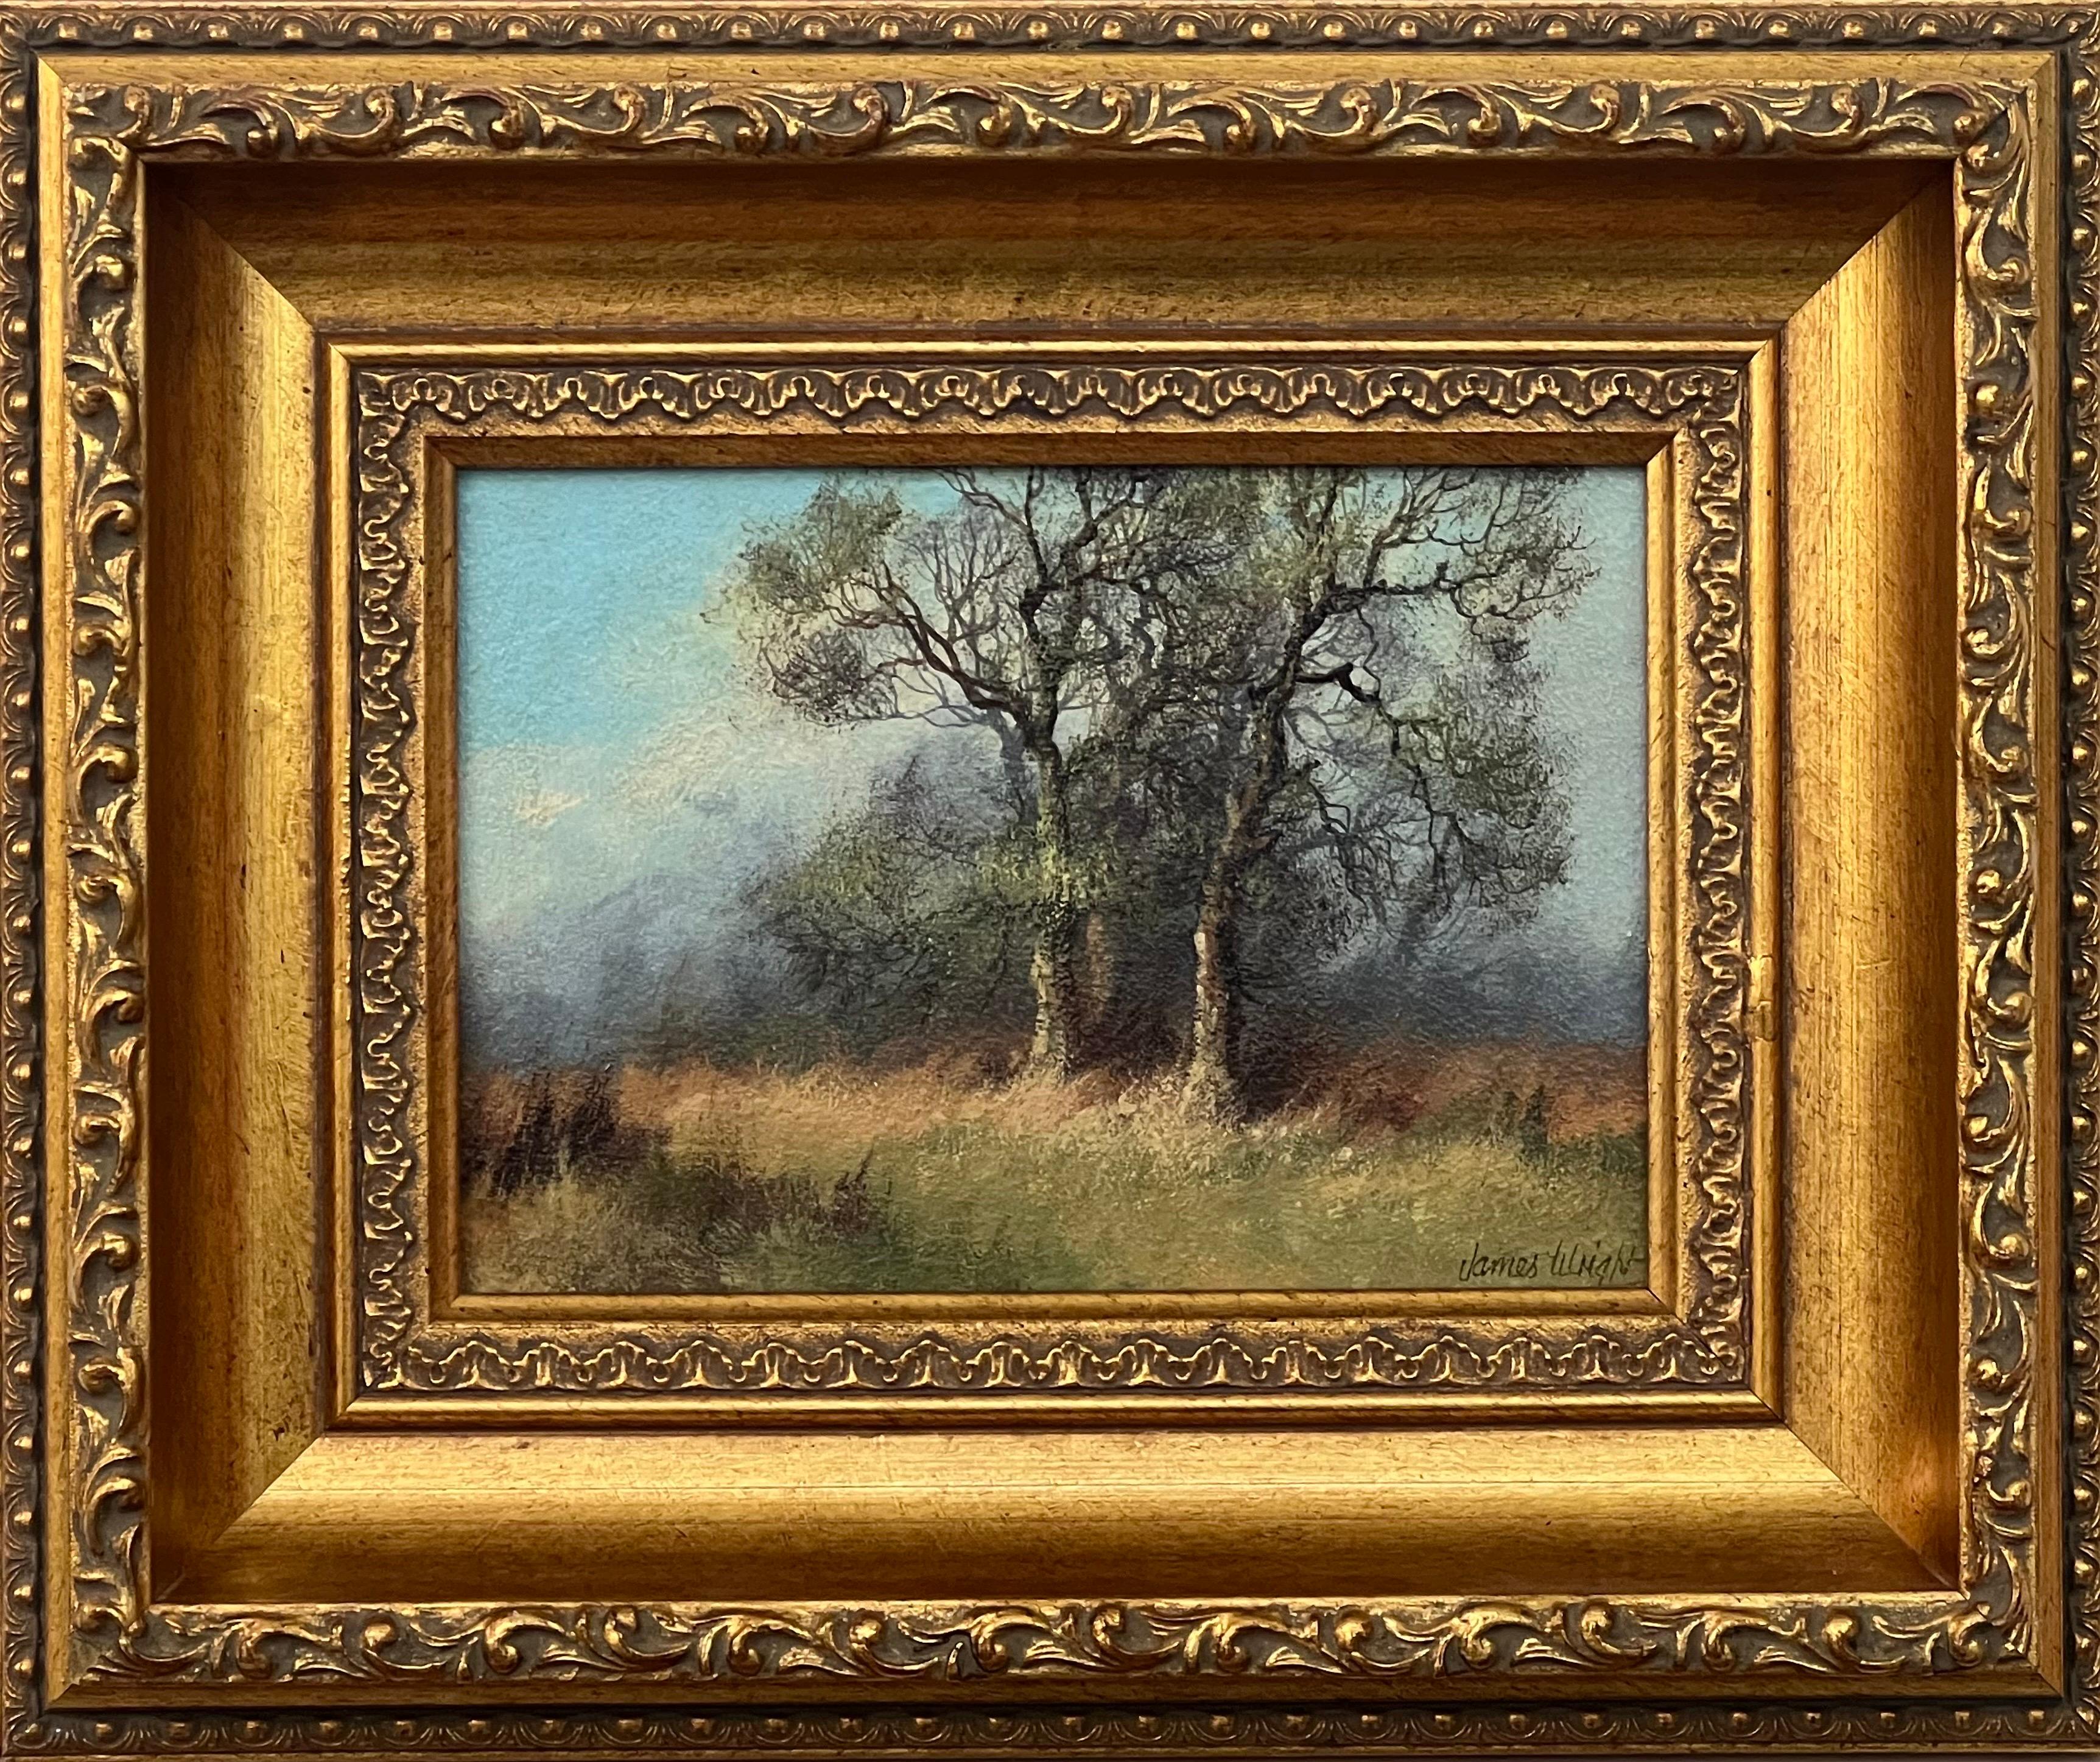 Landscape Painting James Wright - Étude des arbres et des champs dans la campagne anglaise par un artiste paysagiste du 20e siècle